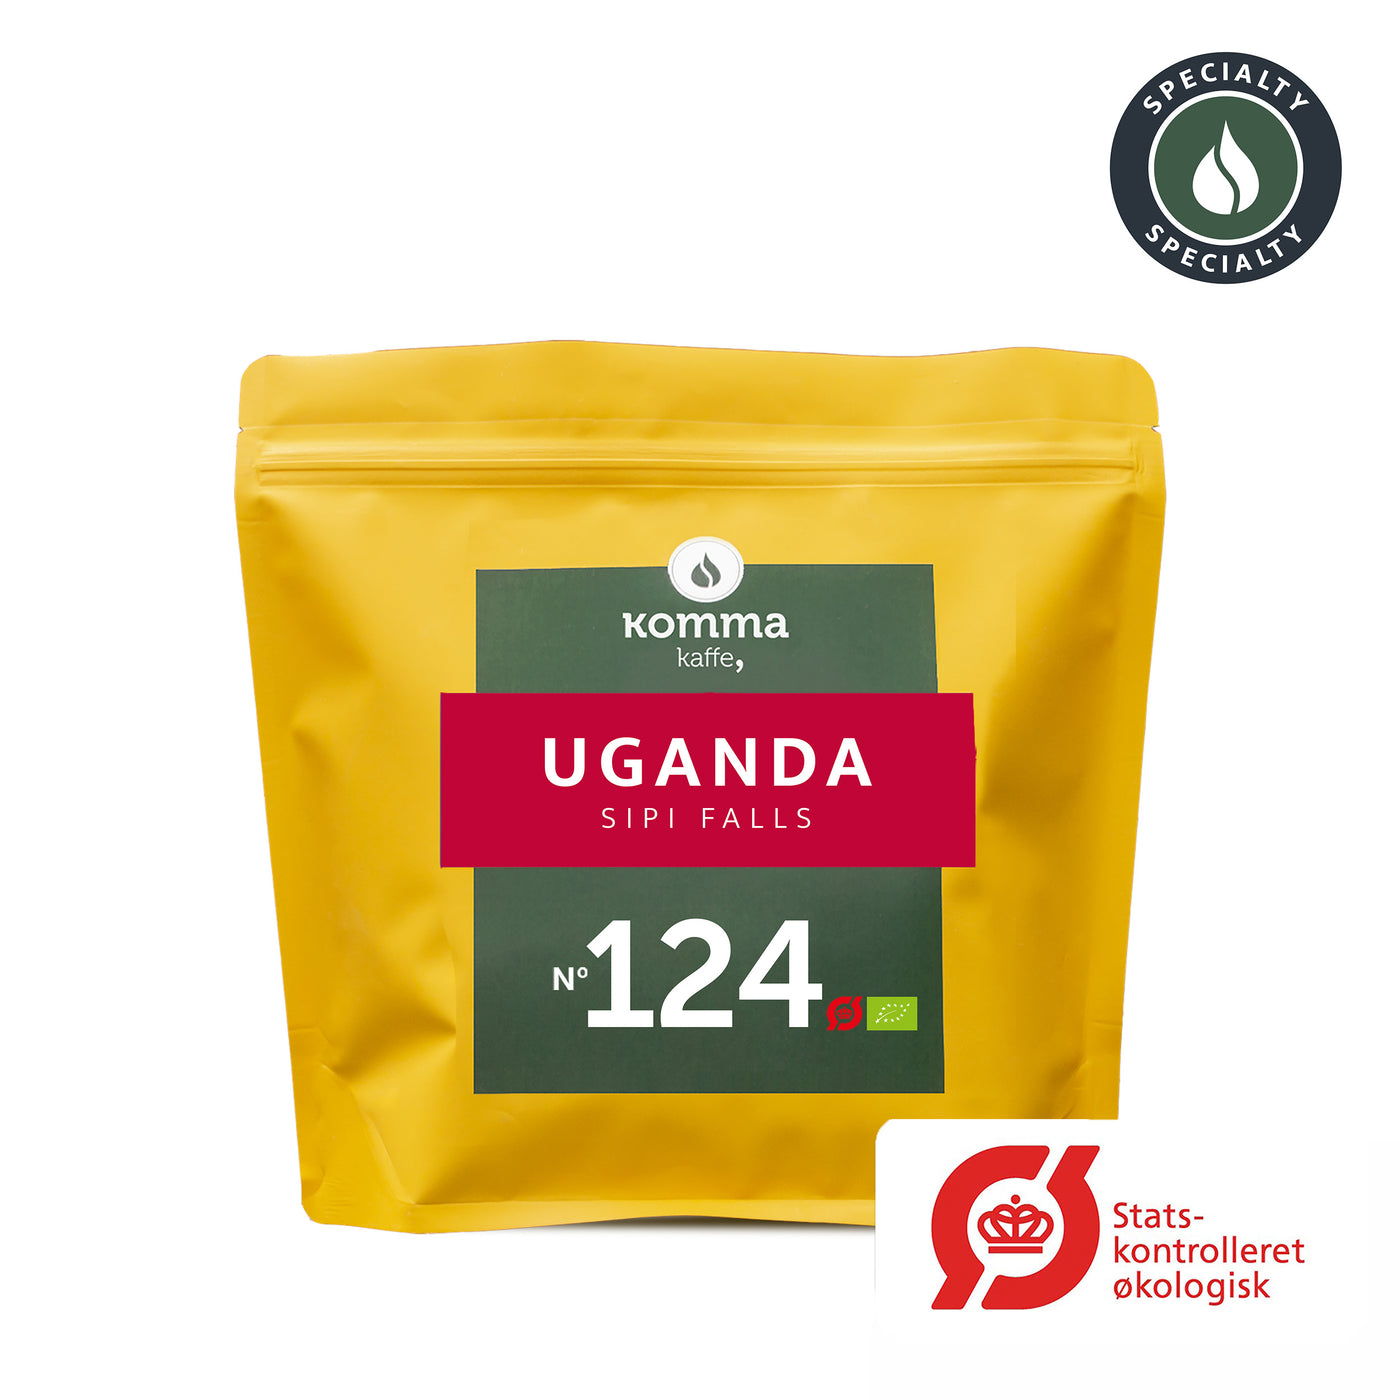 No. 124 | Uganda